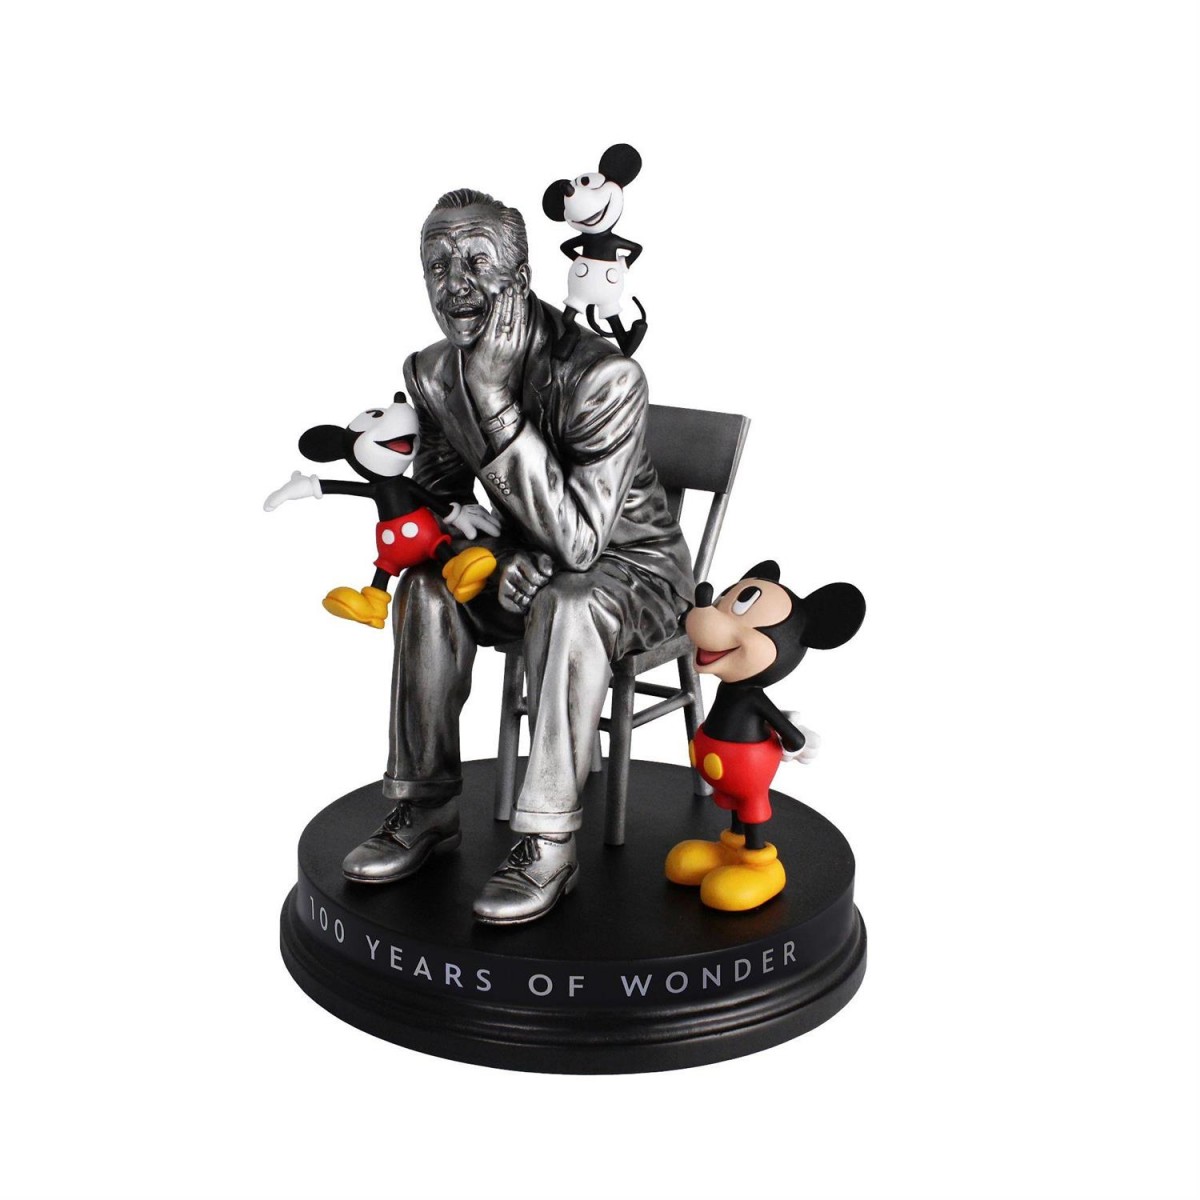 Disney 100: La marca conmemorativa de un centenario mágico – La Litera